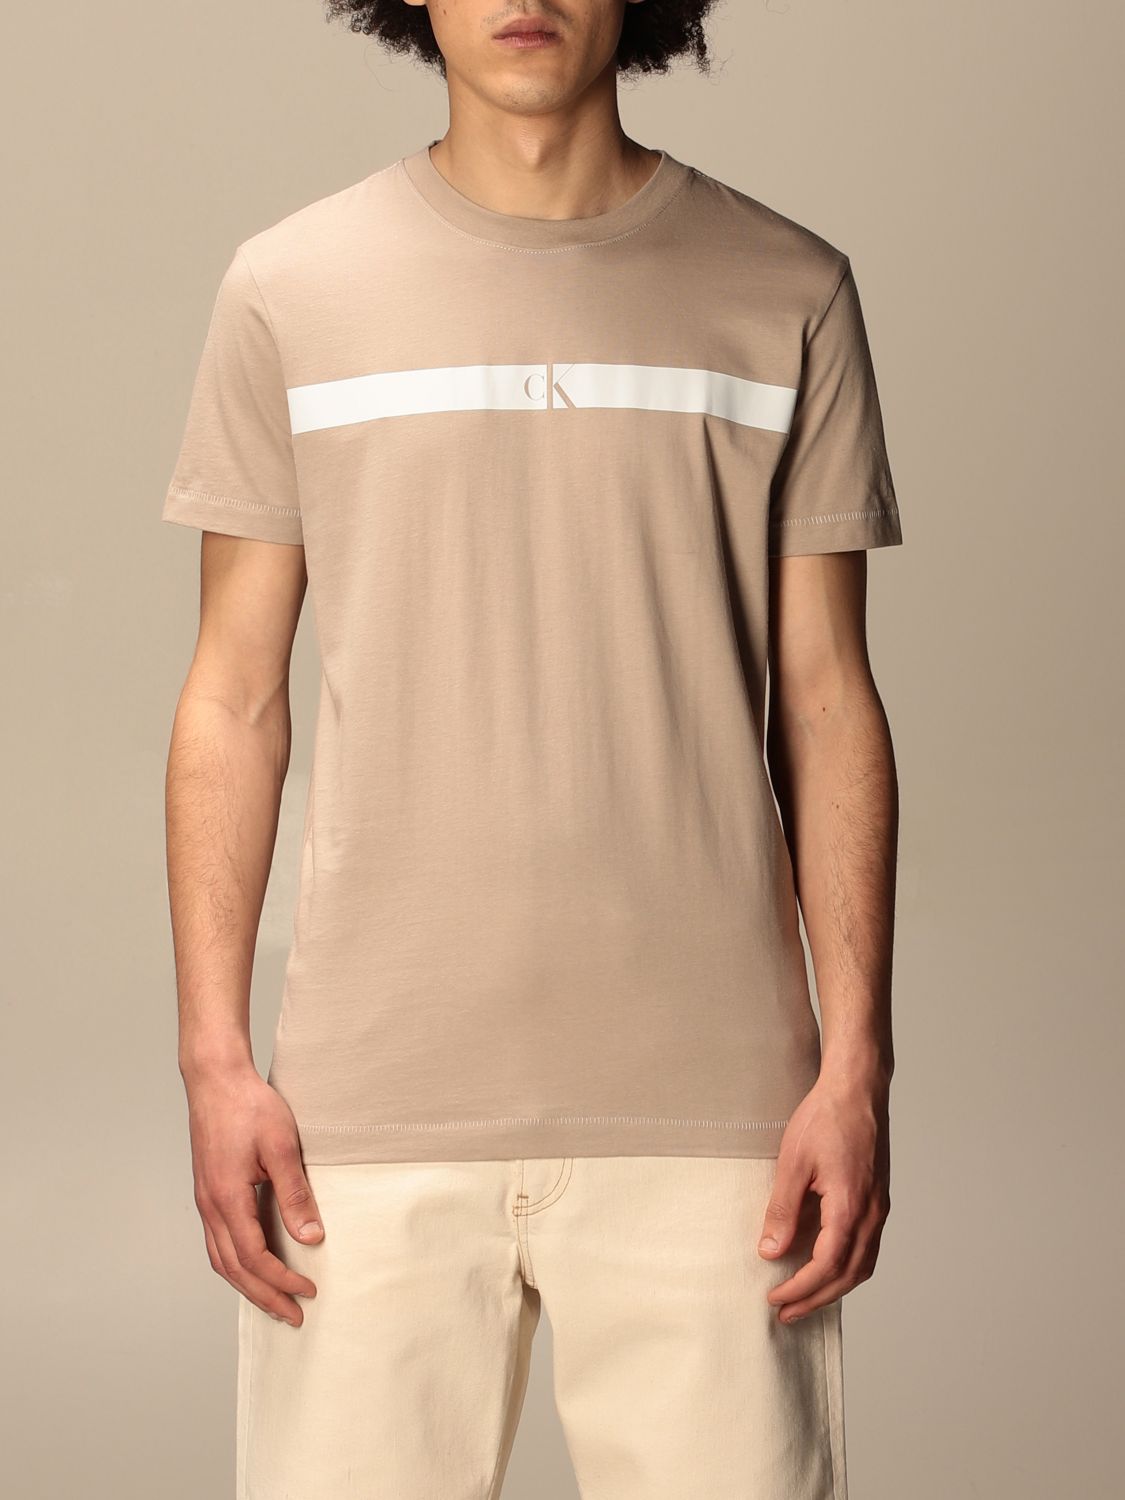 Beige Calvin Klein T Shirt Shop, SAVE 51%.